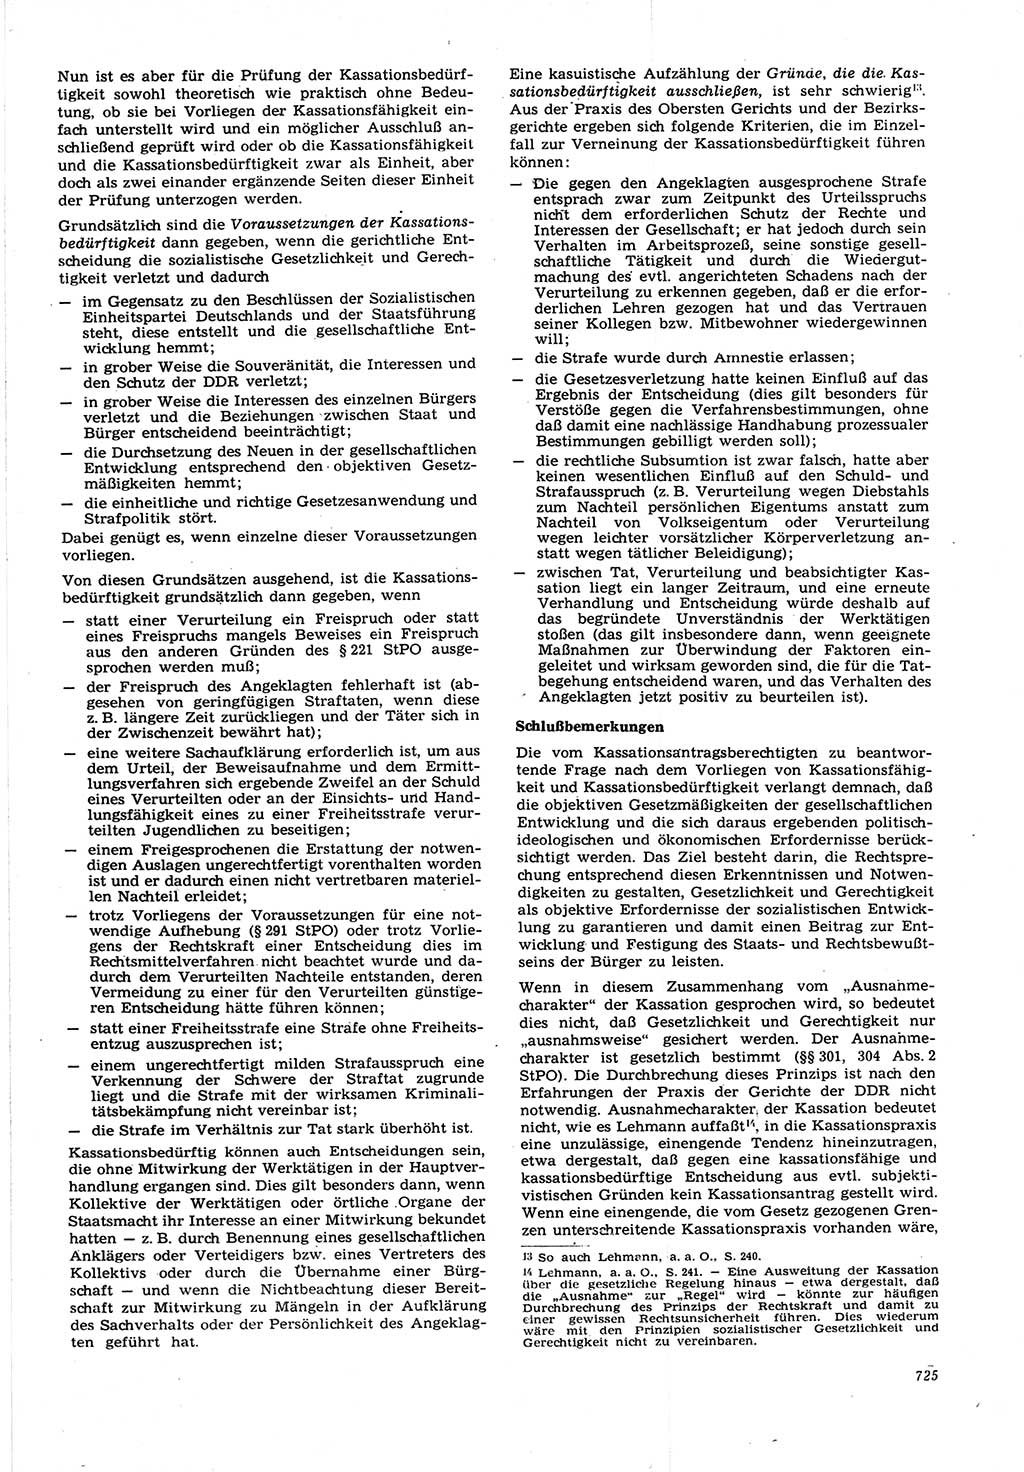 Neue Justiz (NJ), Zeitschrift für Recht und Rechtswissenschaft [Deutsche Demokratische Republik (DDR)], 21. Jahrgang 1967, Seite 725 (NJ DDR 1967, S. 725)